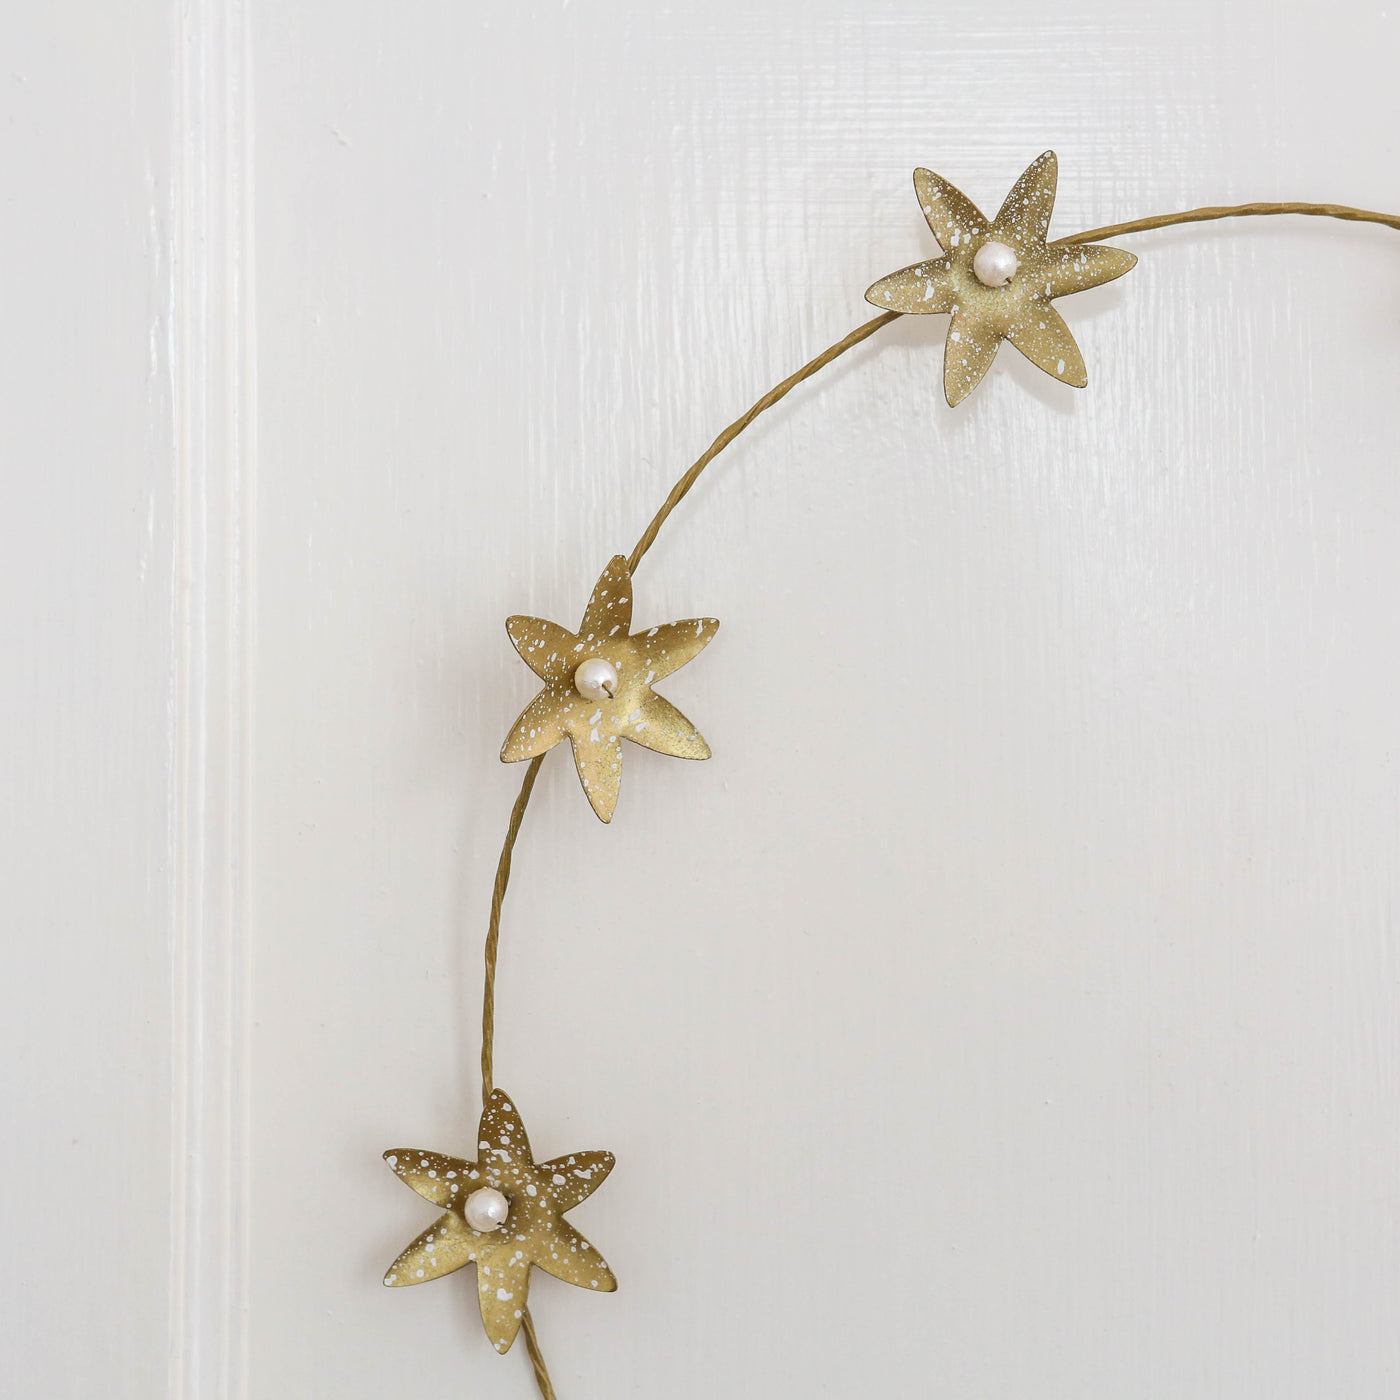 30cm Antique Gold Star Flower Wreath